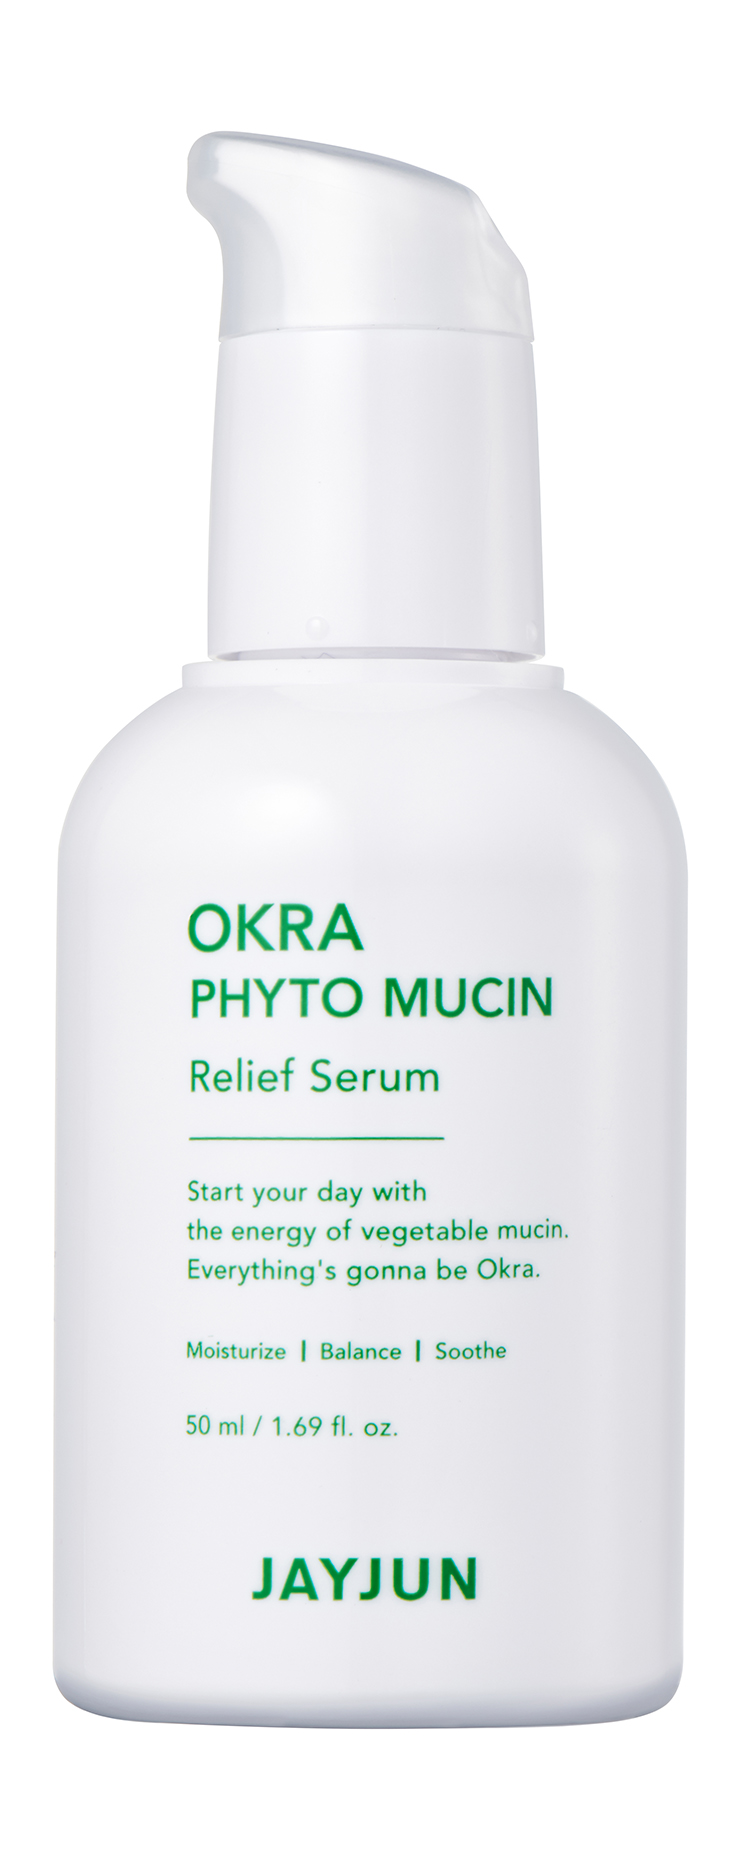 фото Сыворотка для лица jayjun okra phyto mucin relief serum для сияния кожи, 50 мл